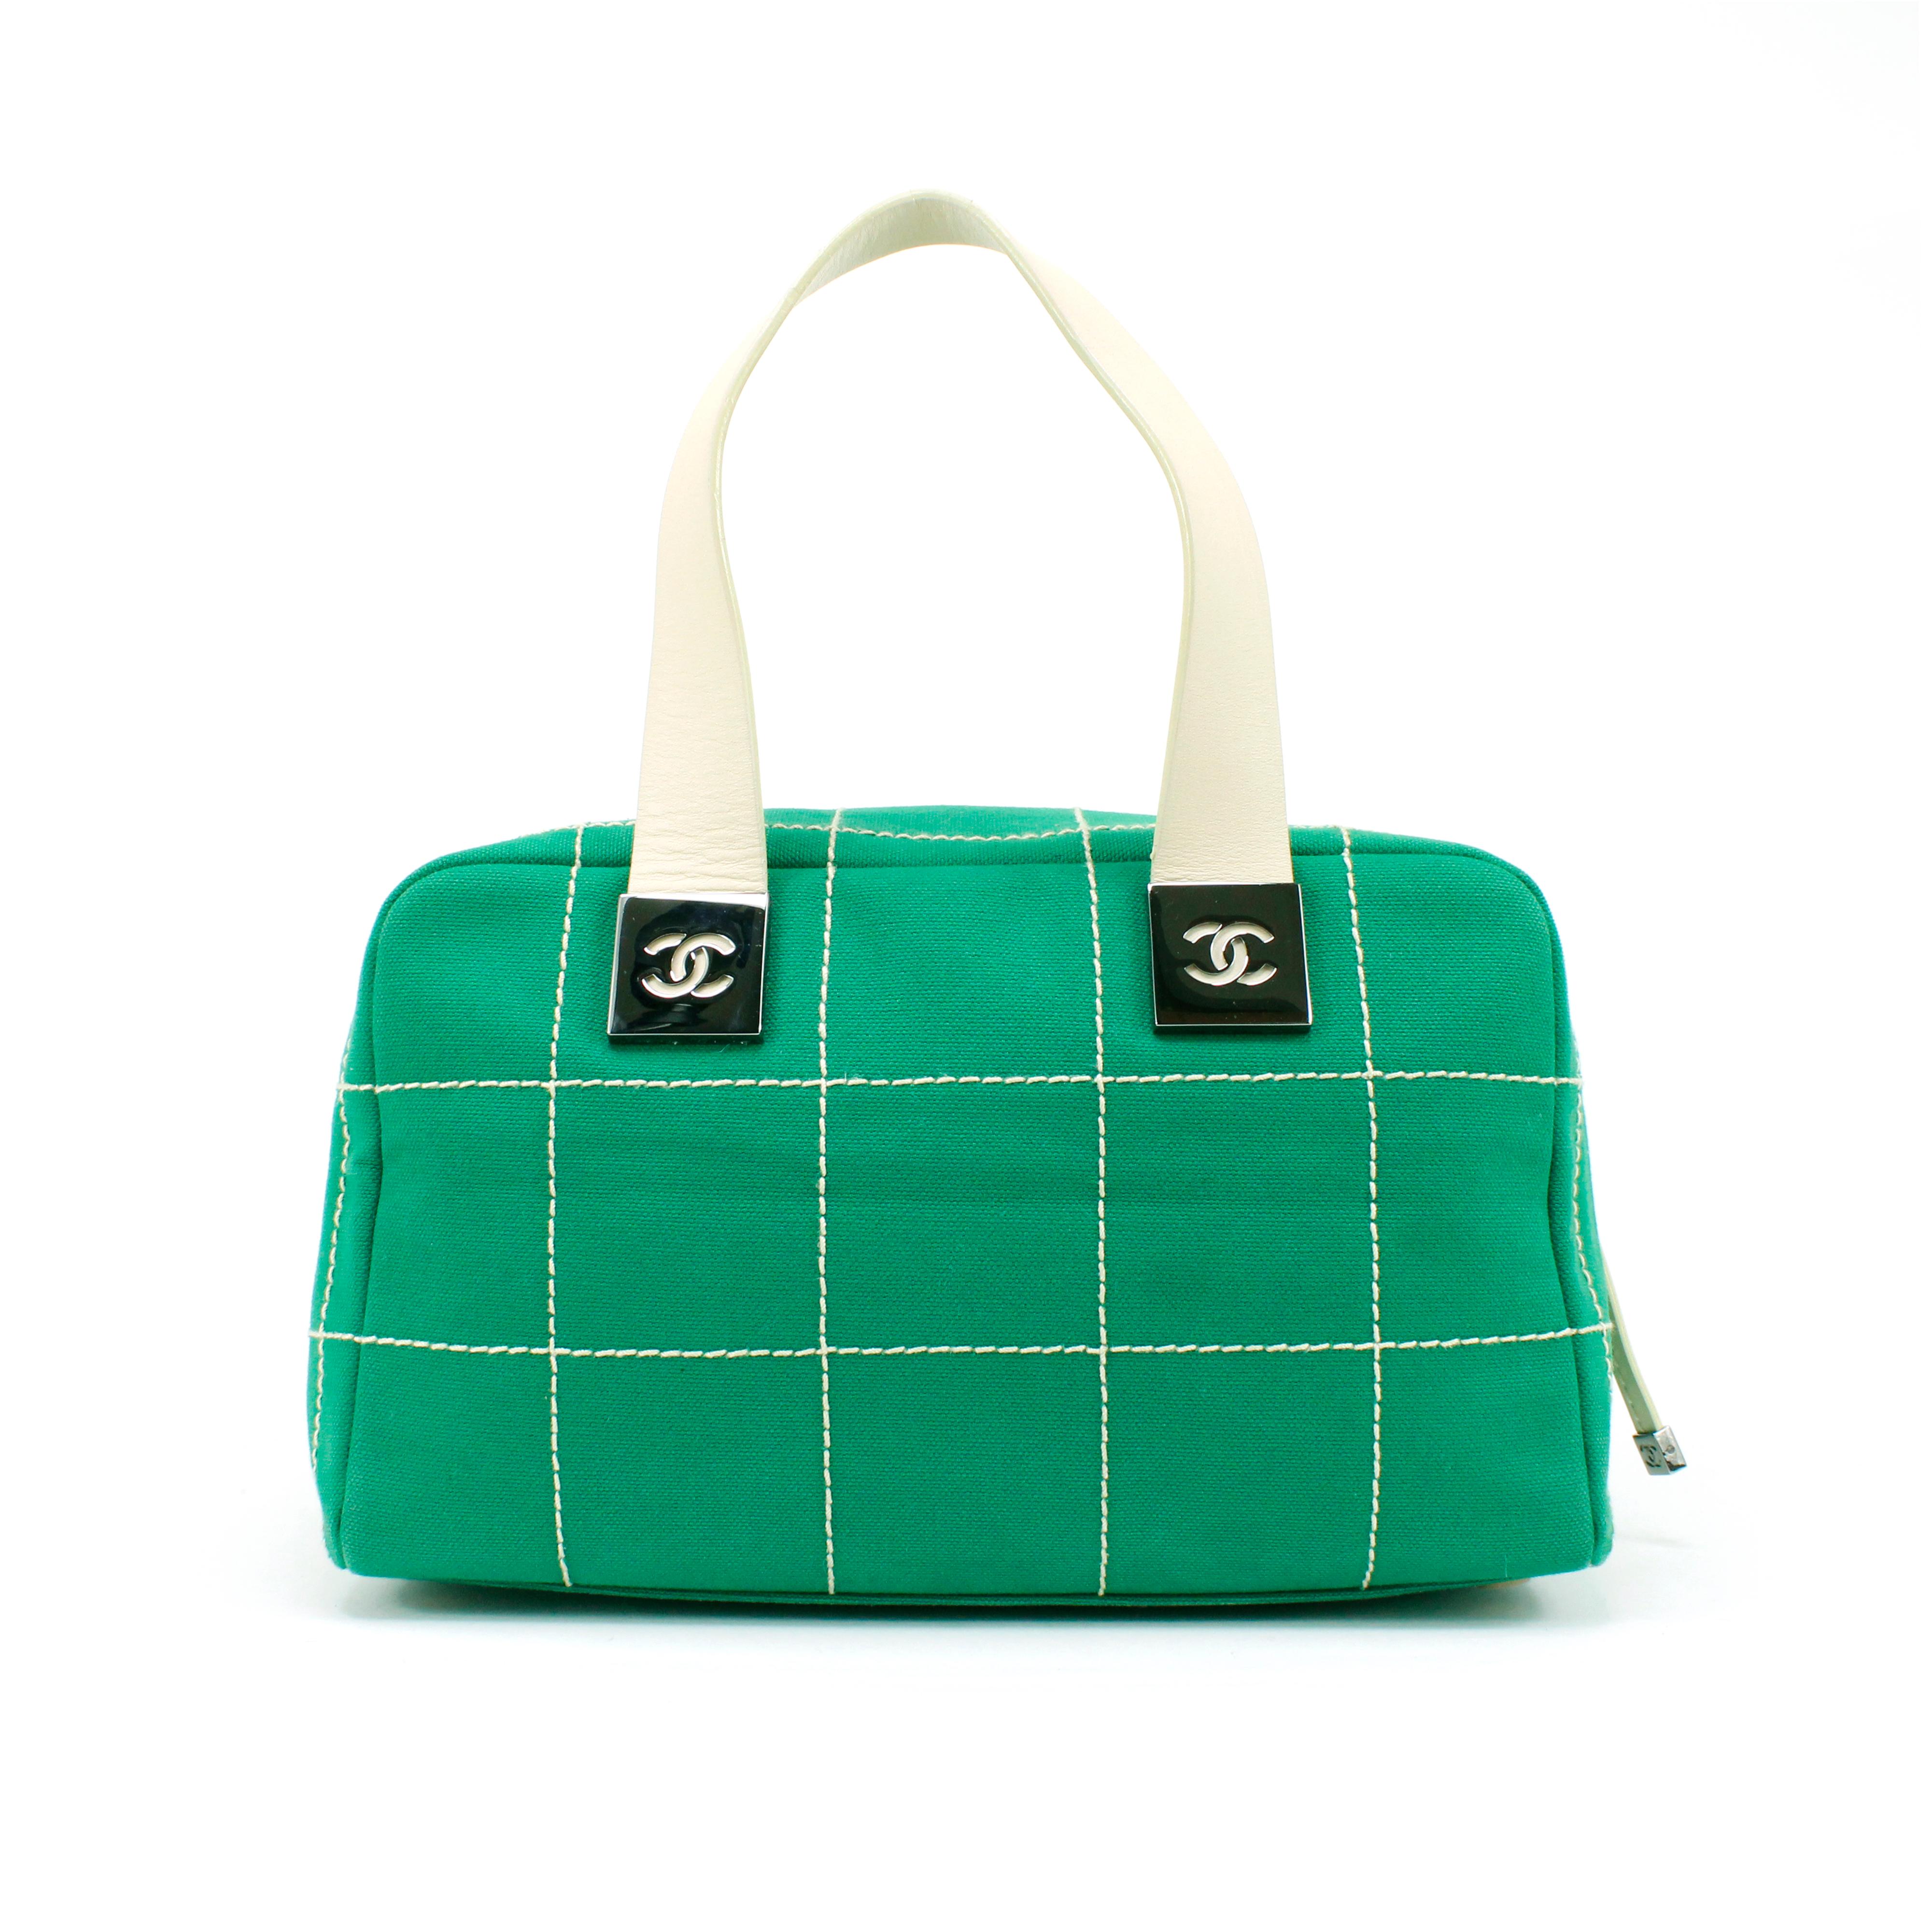 Chanel Tasche, grüner Stoff + weißes Leder, silberne Beschläge. 

Bedingung: 
Gut.

Abmessungen: 
Breite: 28 cm 
Höhe: 16.5 cm 
Tiefe: 17,5 cm